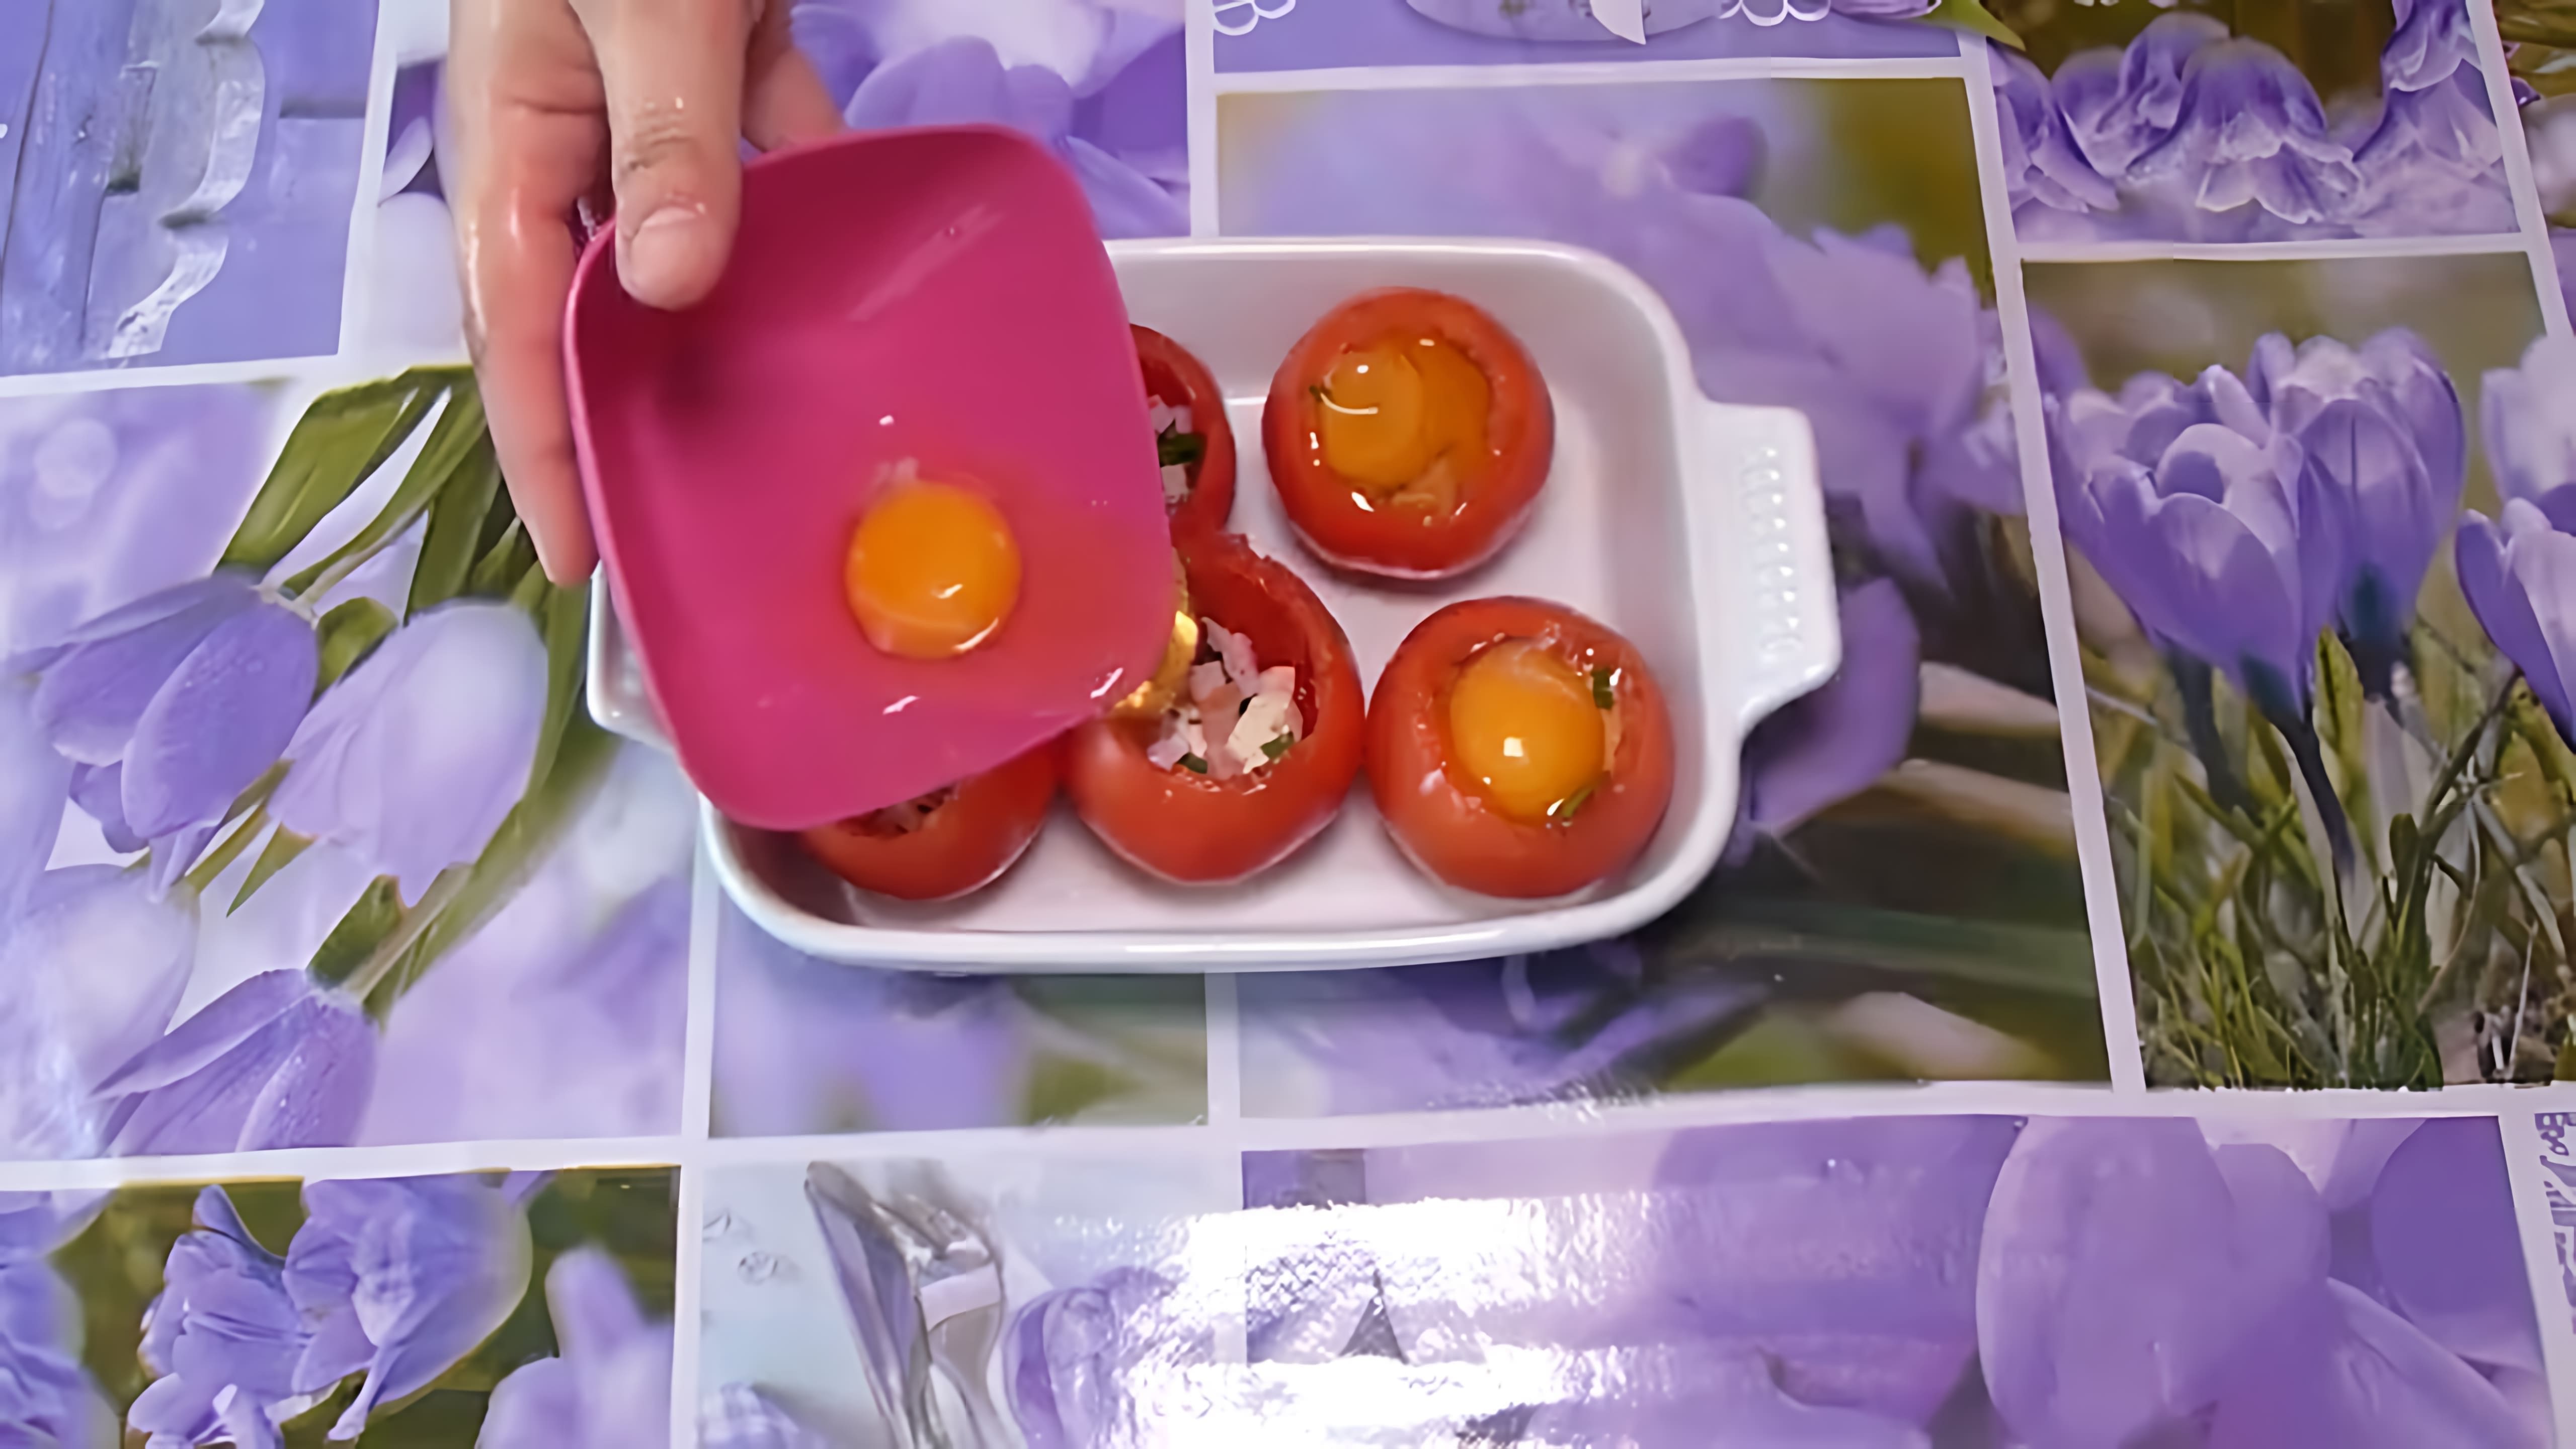 В этом видео демонстрируется процесс приготовления вкусного и быстрого завтрака - запеченных помидоров с яйцами